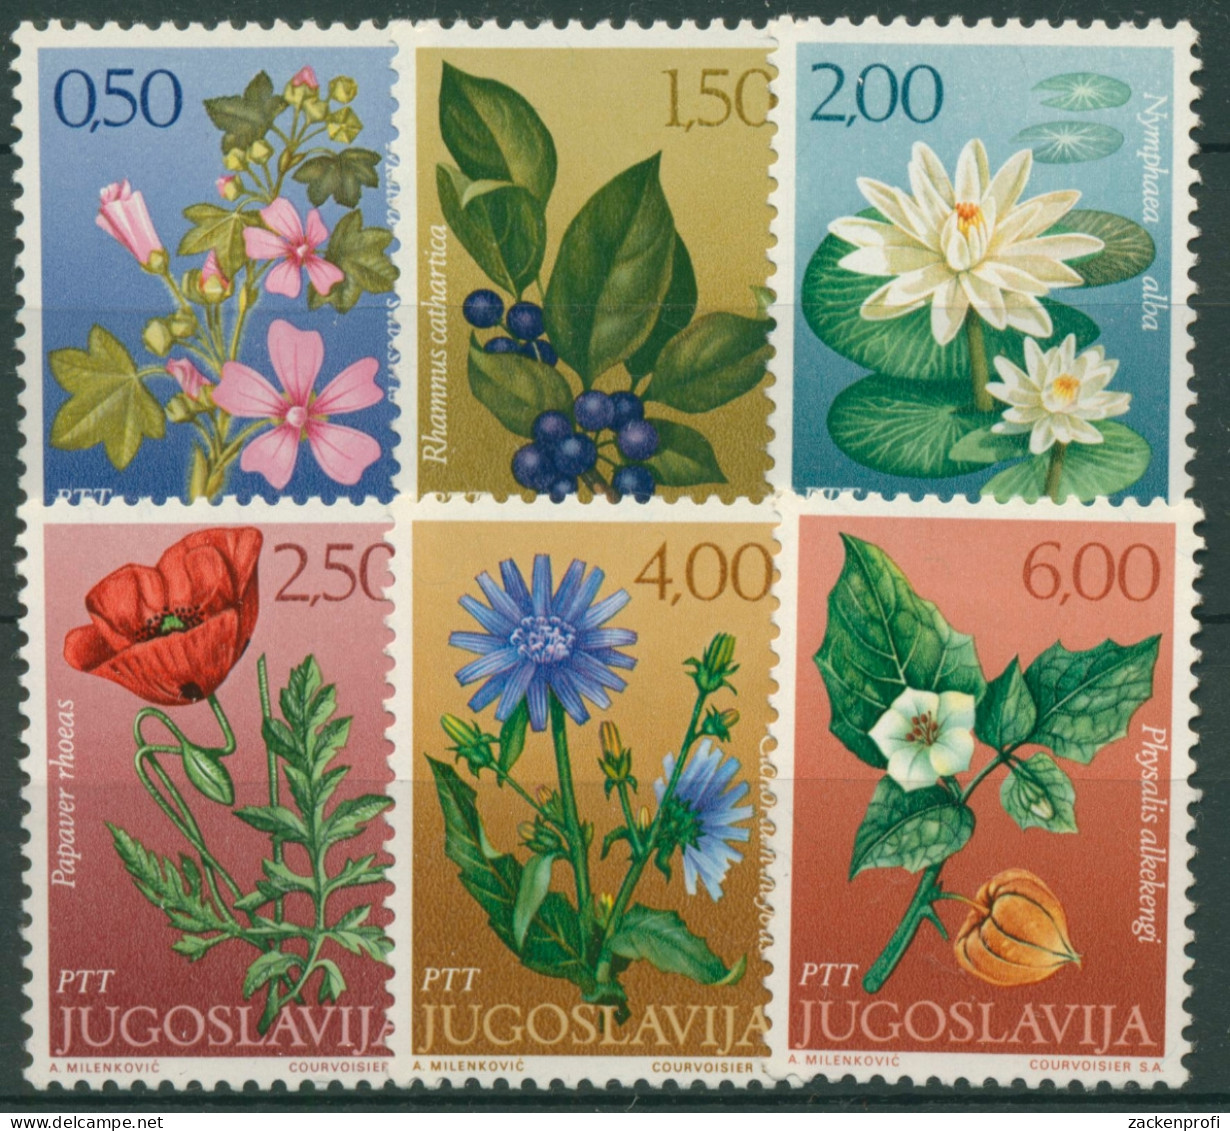 Jugoslawien 1971 Pflanzen Blumen Malve Wegwarte Seerose 1420/25 Postfrisch - Unused Stamps